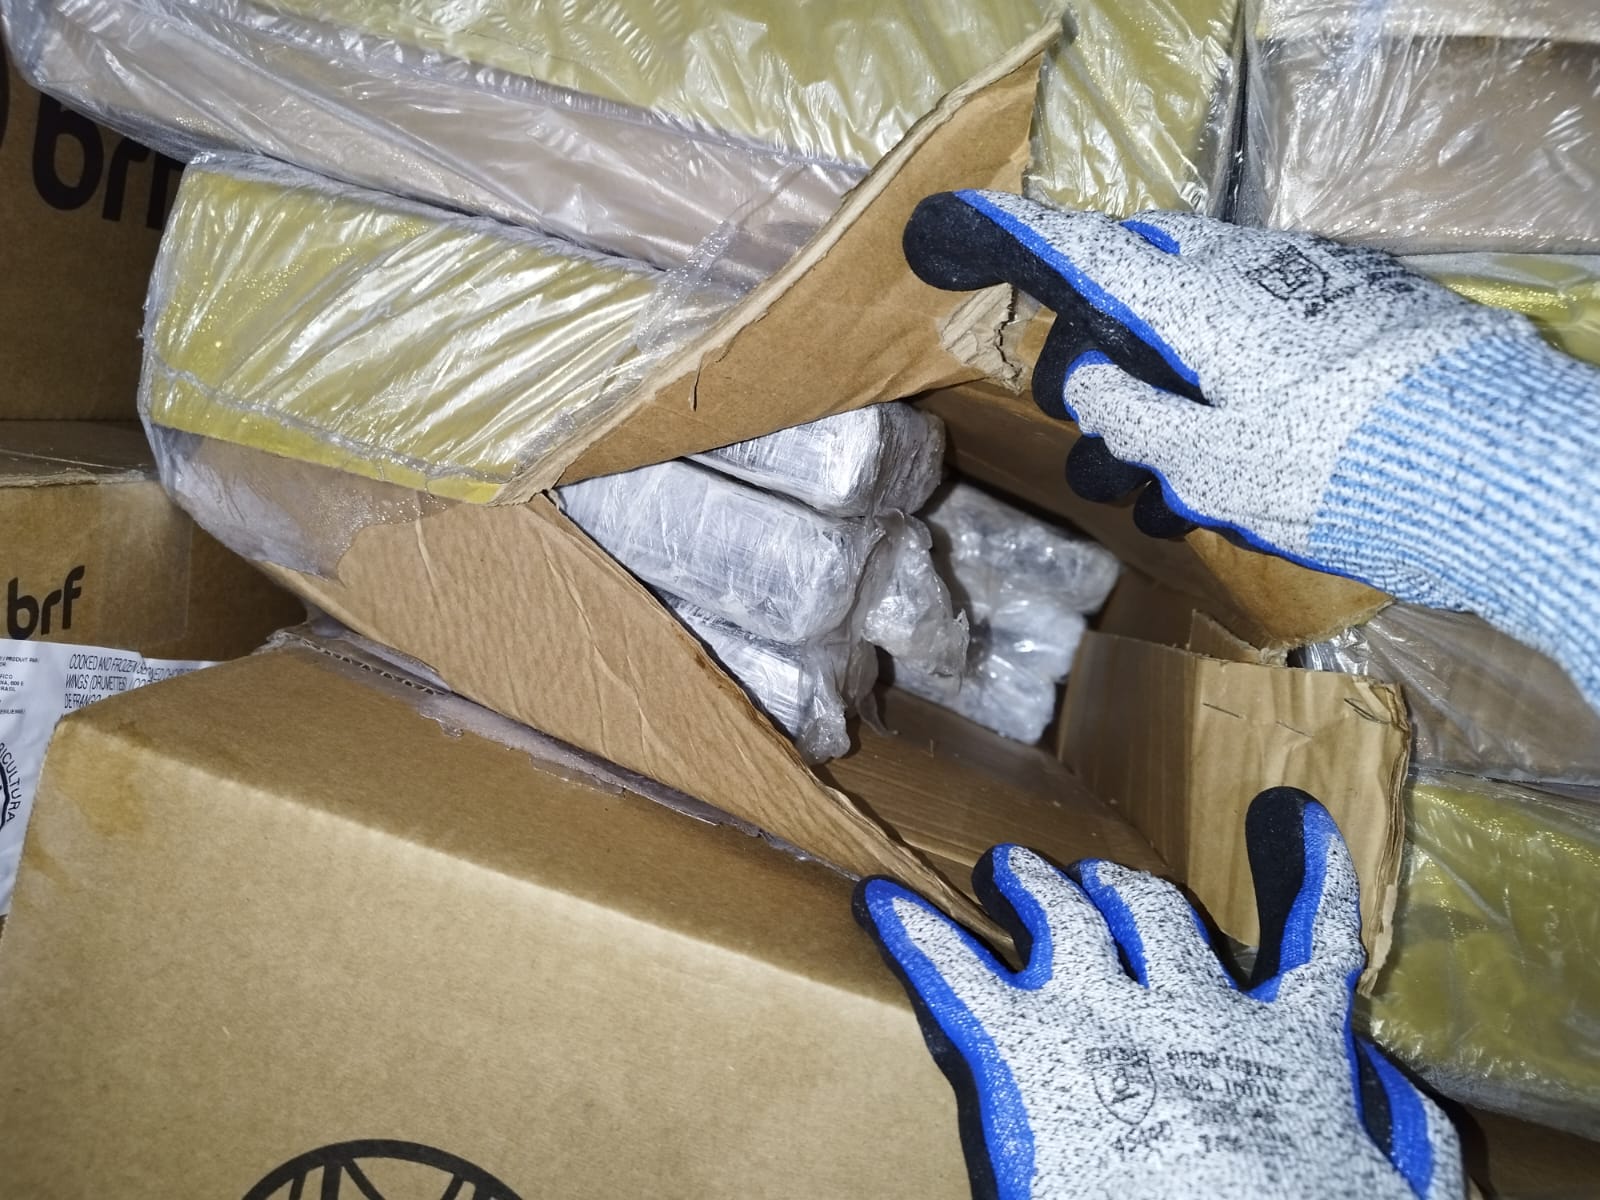 Receita apreende 276 KG de cocaína em carga de aves congeladas no Porto de Itaguaí, na Região Metropolitana (Foto: Divulgação/Receita Federal)